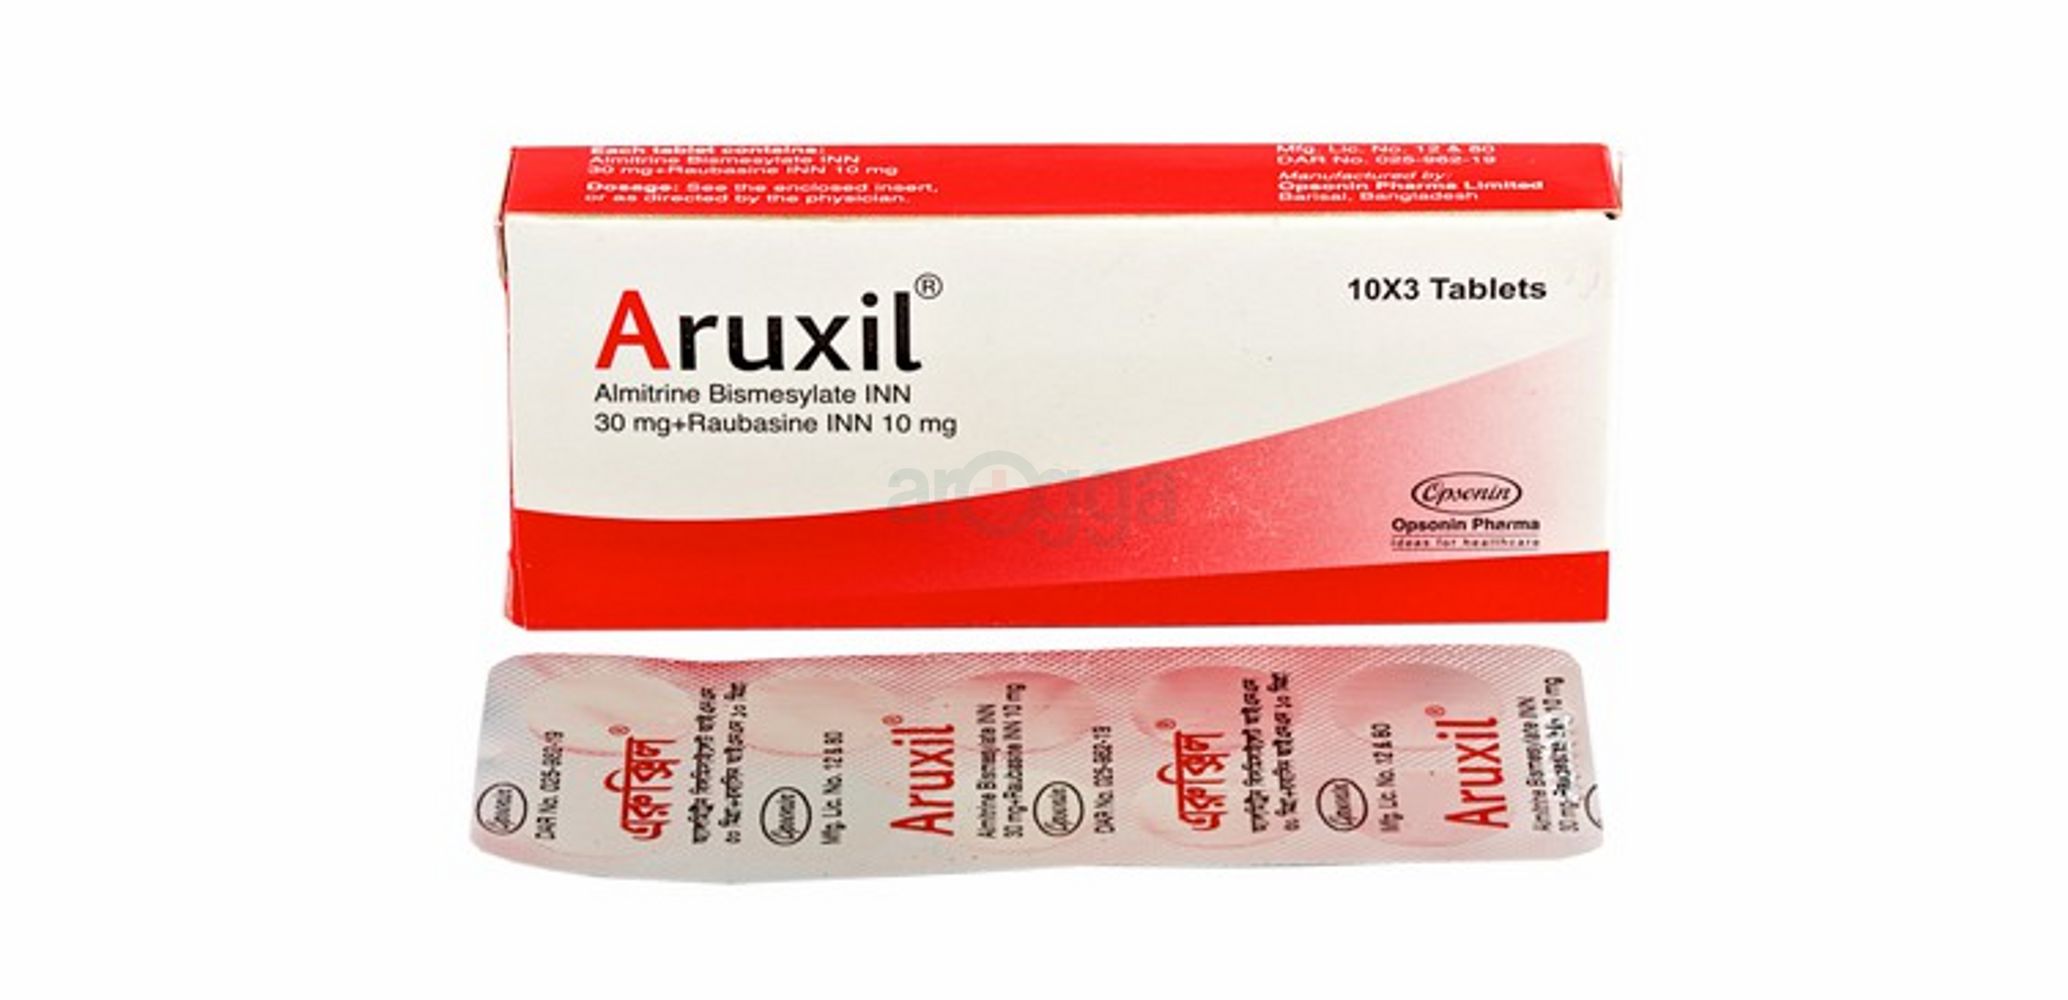 Aruxil